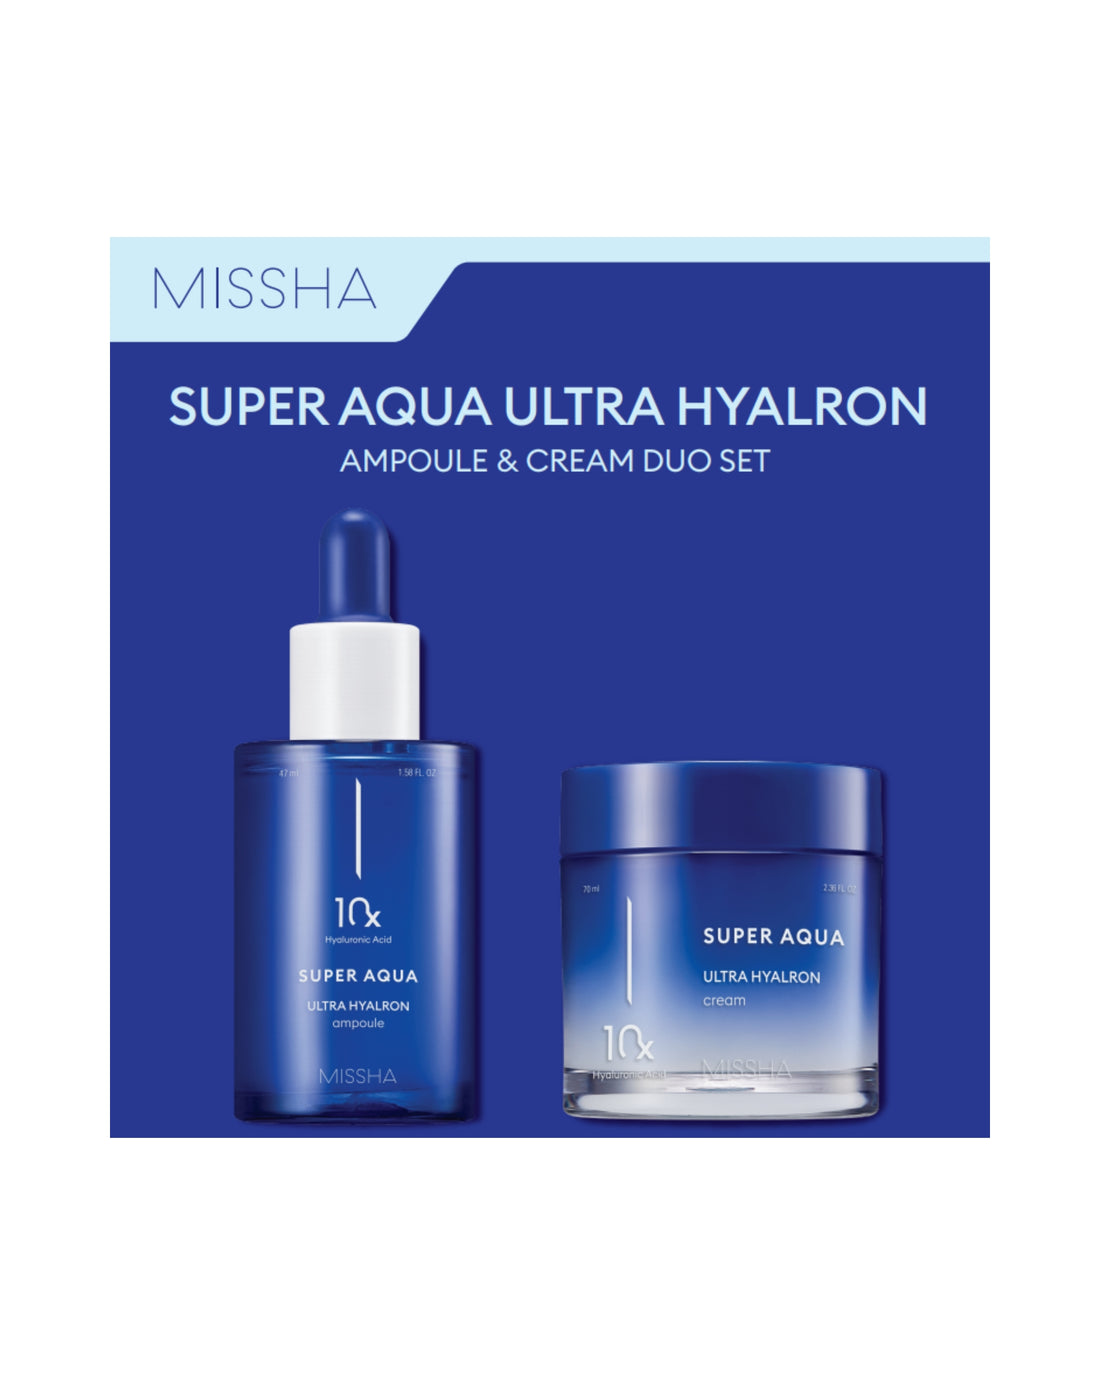 Super Aqua Ultra Hyalron Duo Set